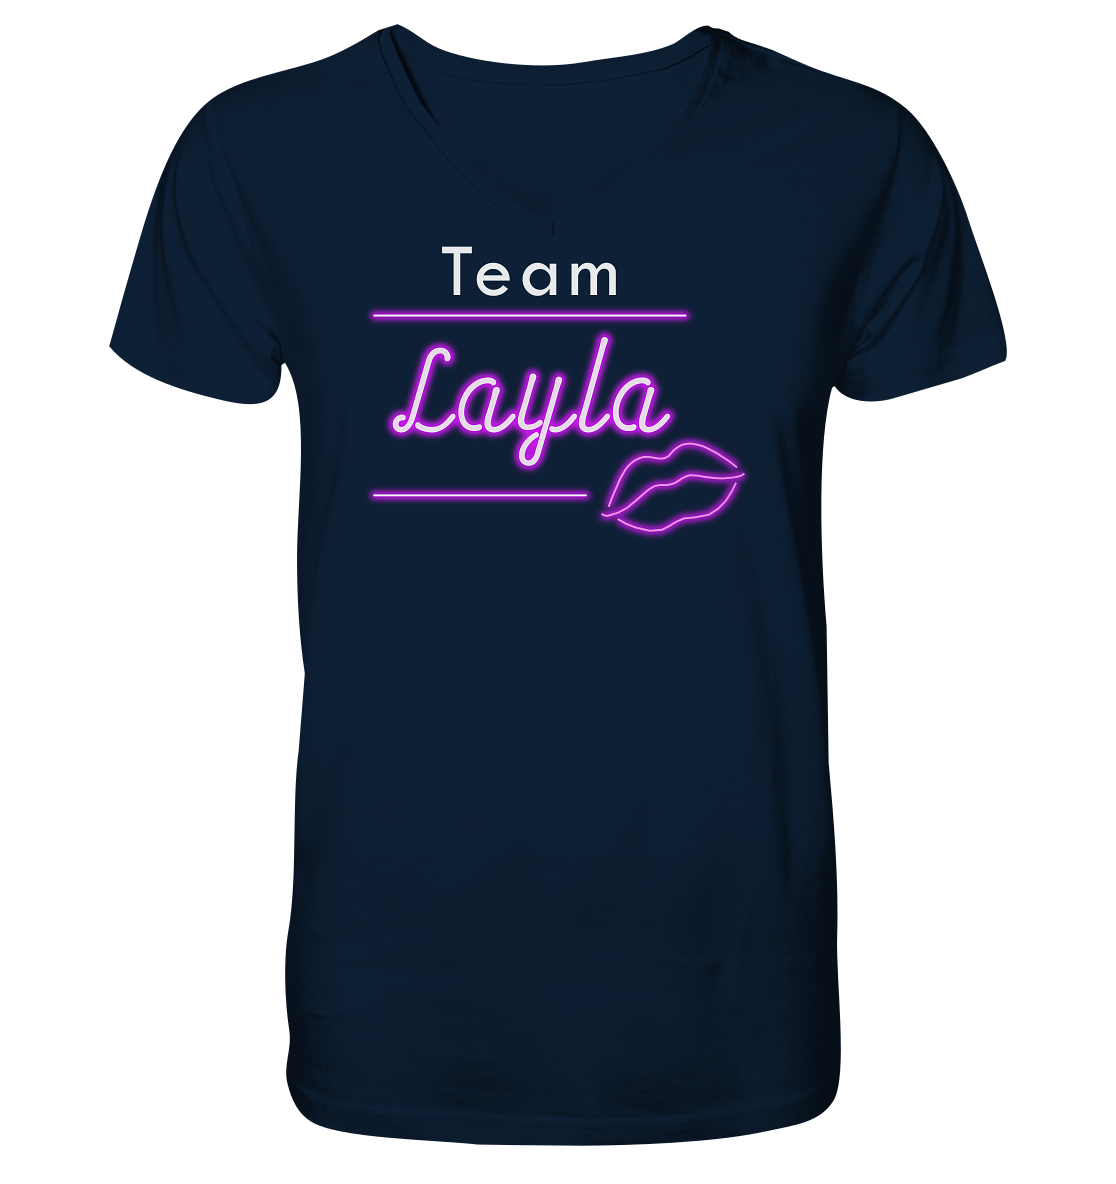 Willkommen im Team “Layla” das ultimative Partyshirt für Mallorca oder Volksfest – V-Neck Shirt